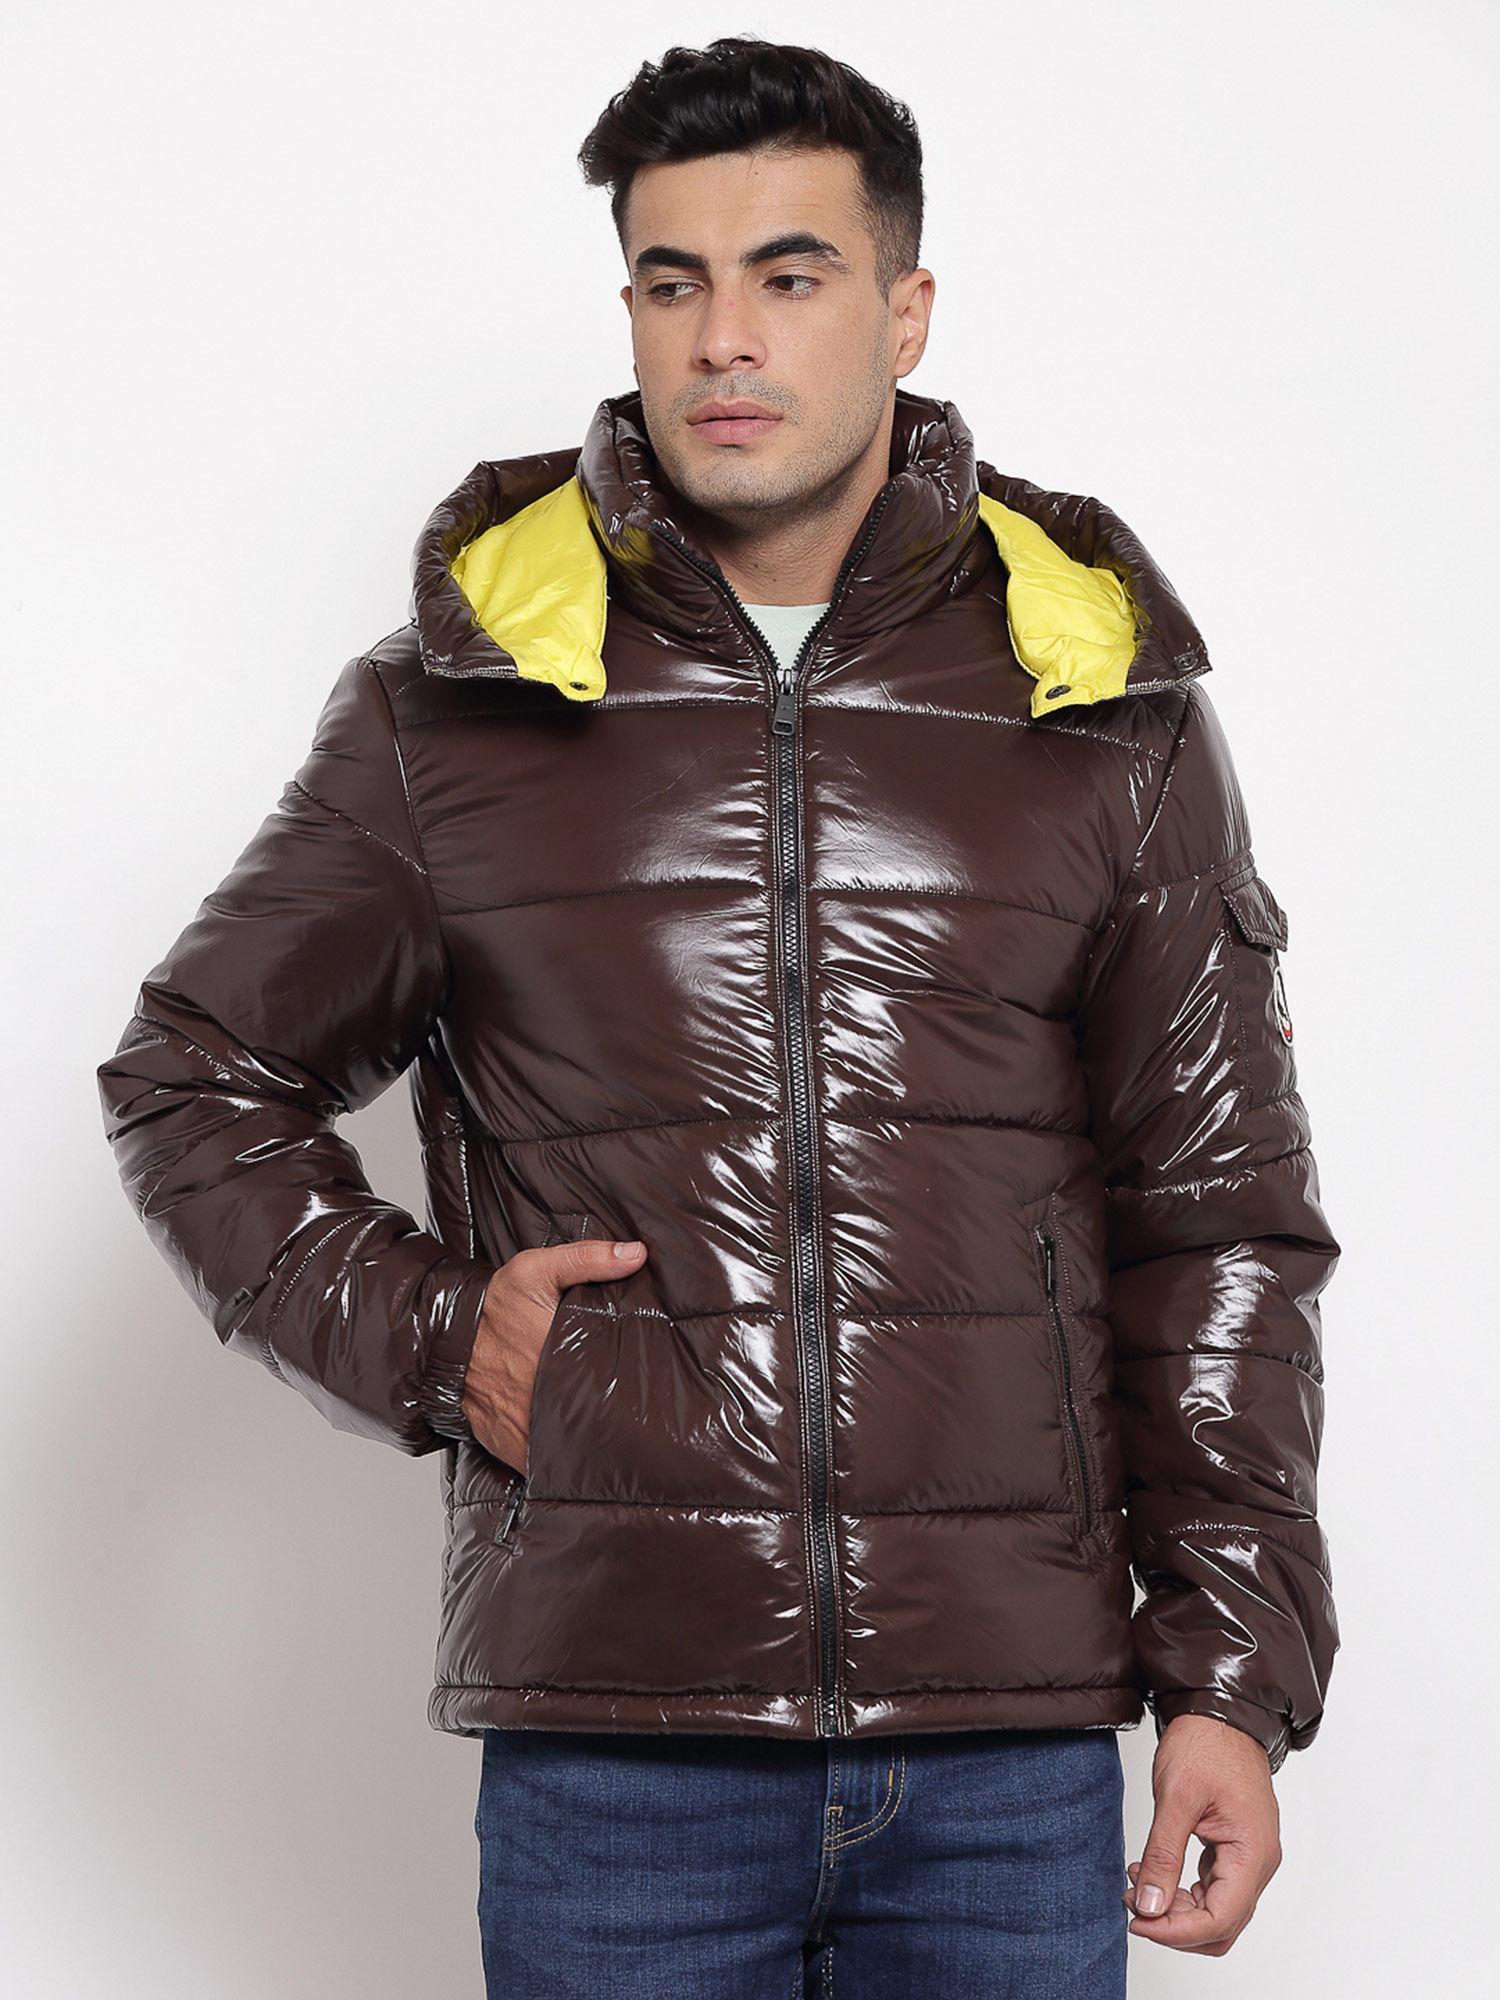 mens brown jacket